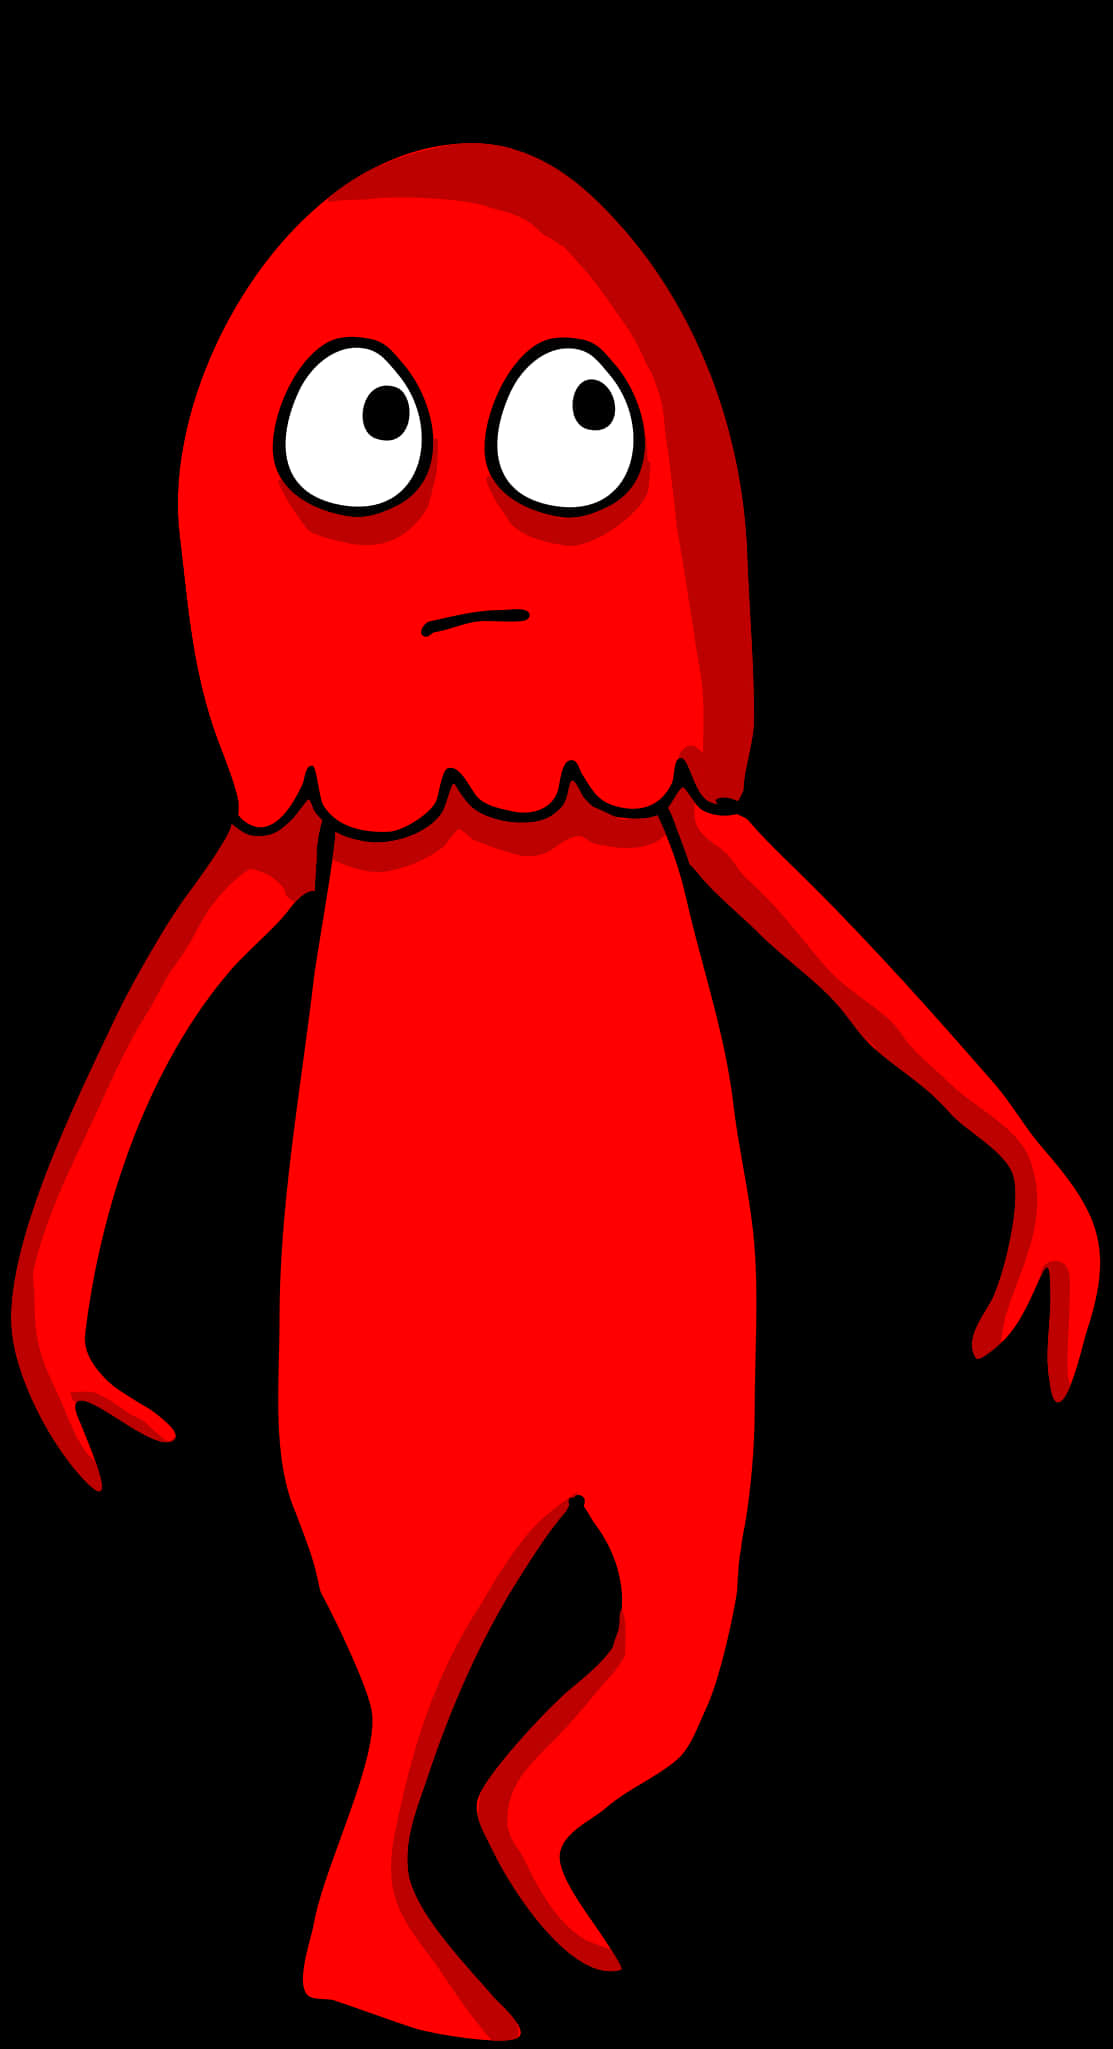 Red Cartoon Alien Character